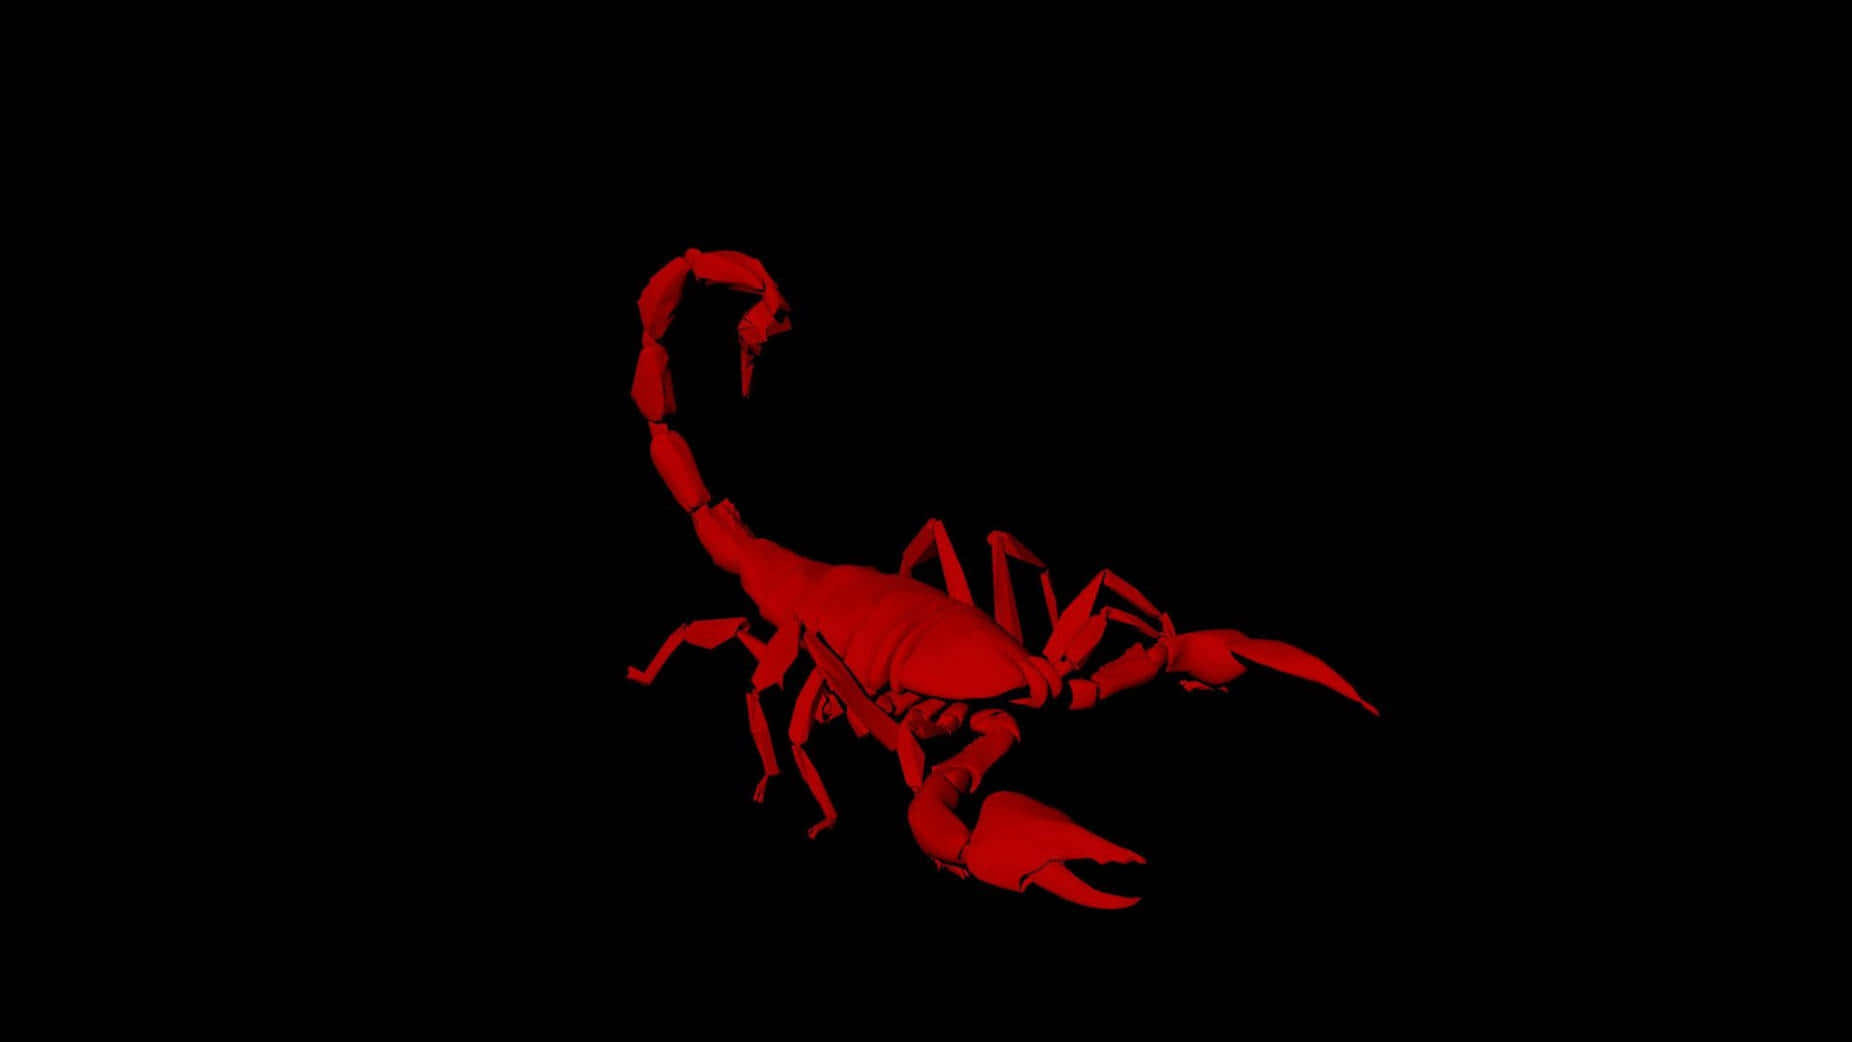 MK Scorpion Art Wallpapers - Aesthetic Mortal Kombat Wallpaper